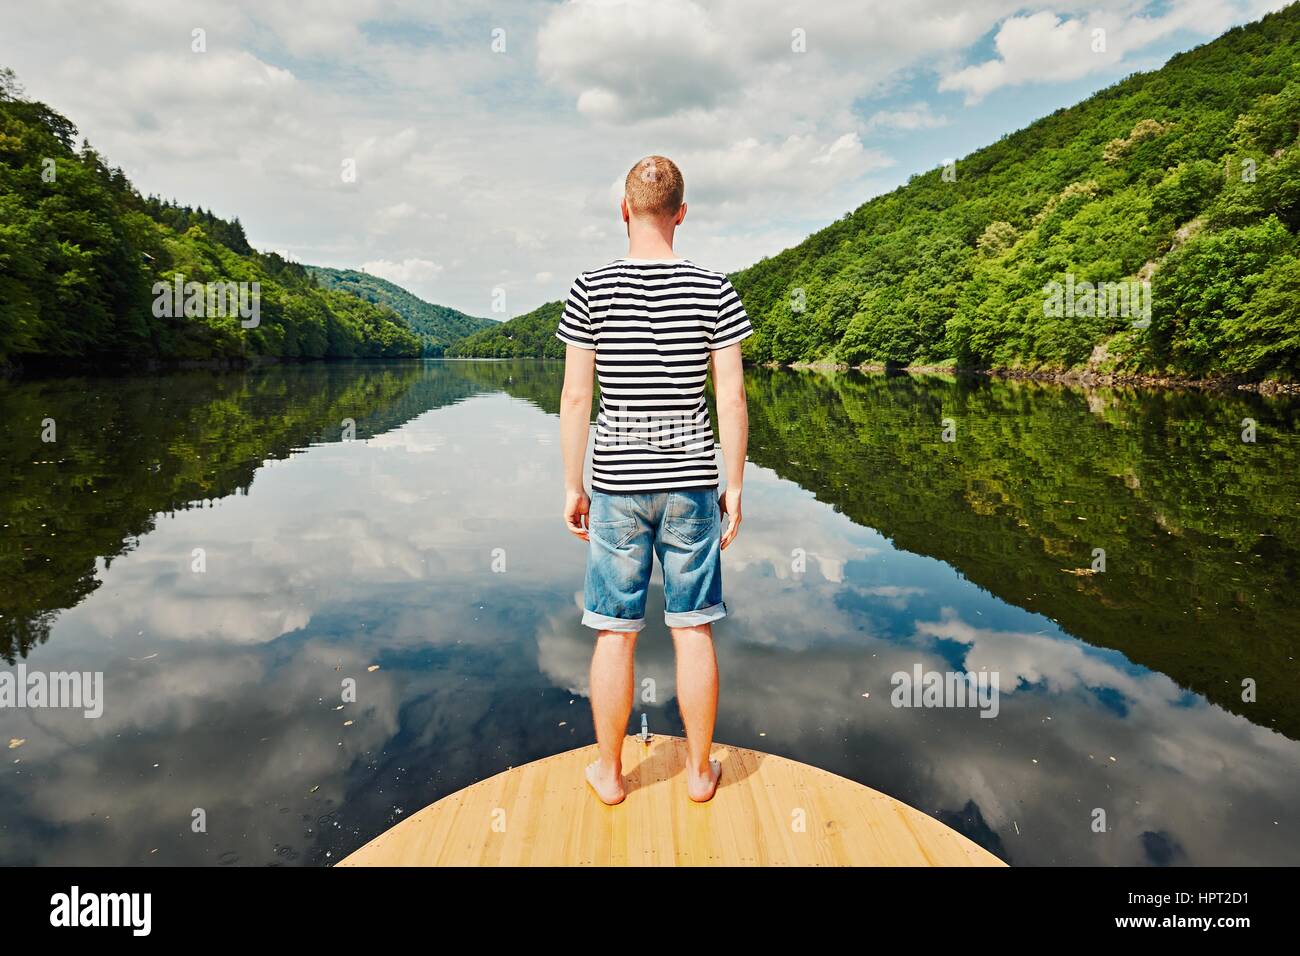 Urlaubsreise auf dem Fluss. Gut aussehender Mann mit blau-weiß gestreiften Hemd auf dem Bug des Bootes. Vltava (Moldau) in der Nähe von Prag, Tschechische Republik Stockfoto